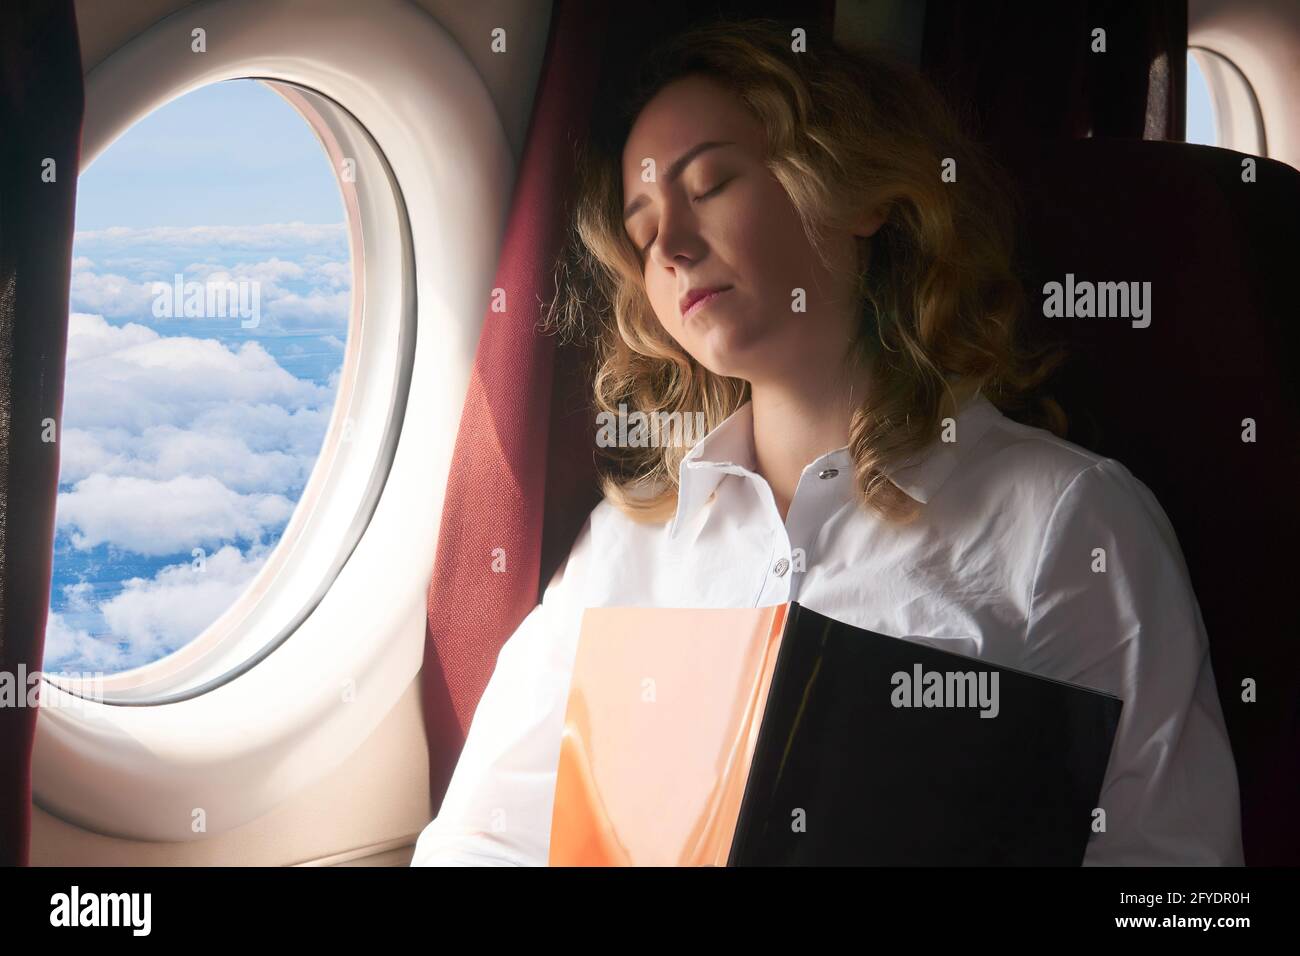 la giovane donna si è zombata nella cabina di un volo aereo durante un lungo volo Foto Stock